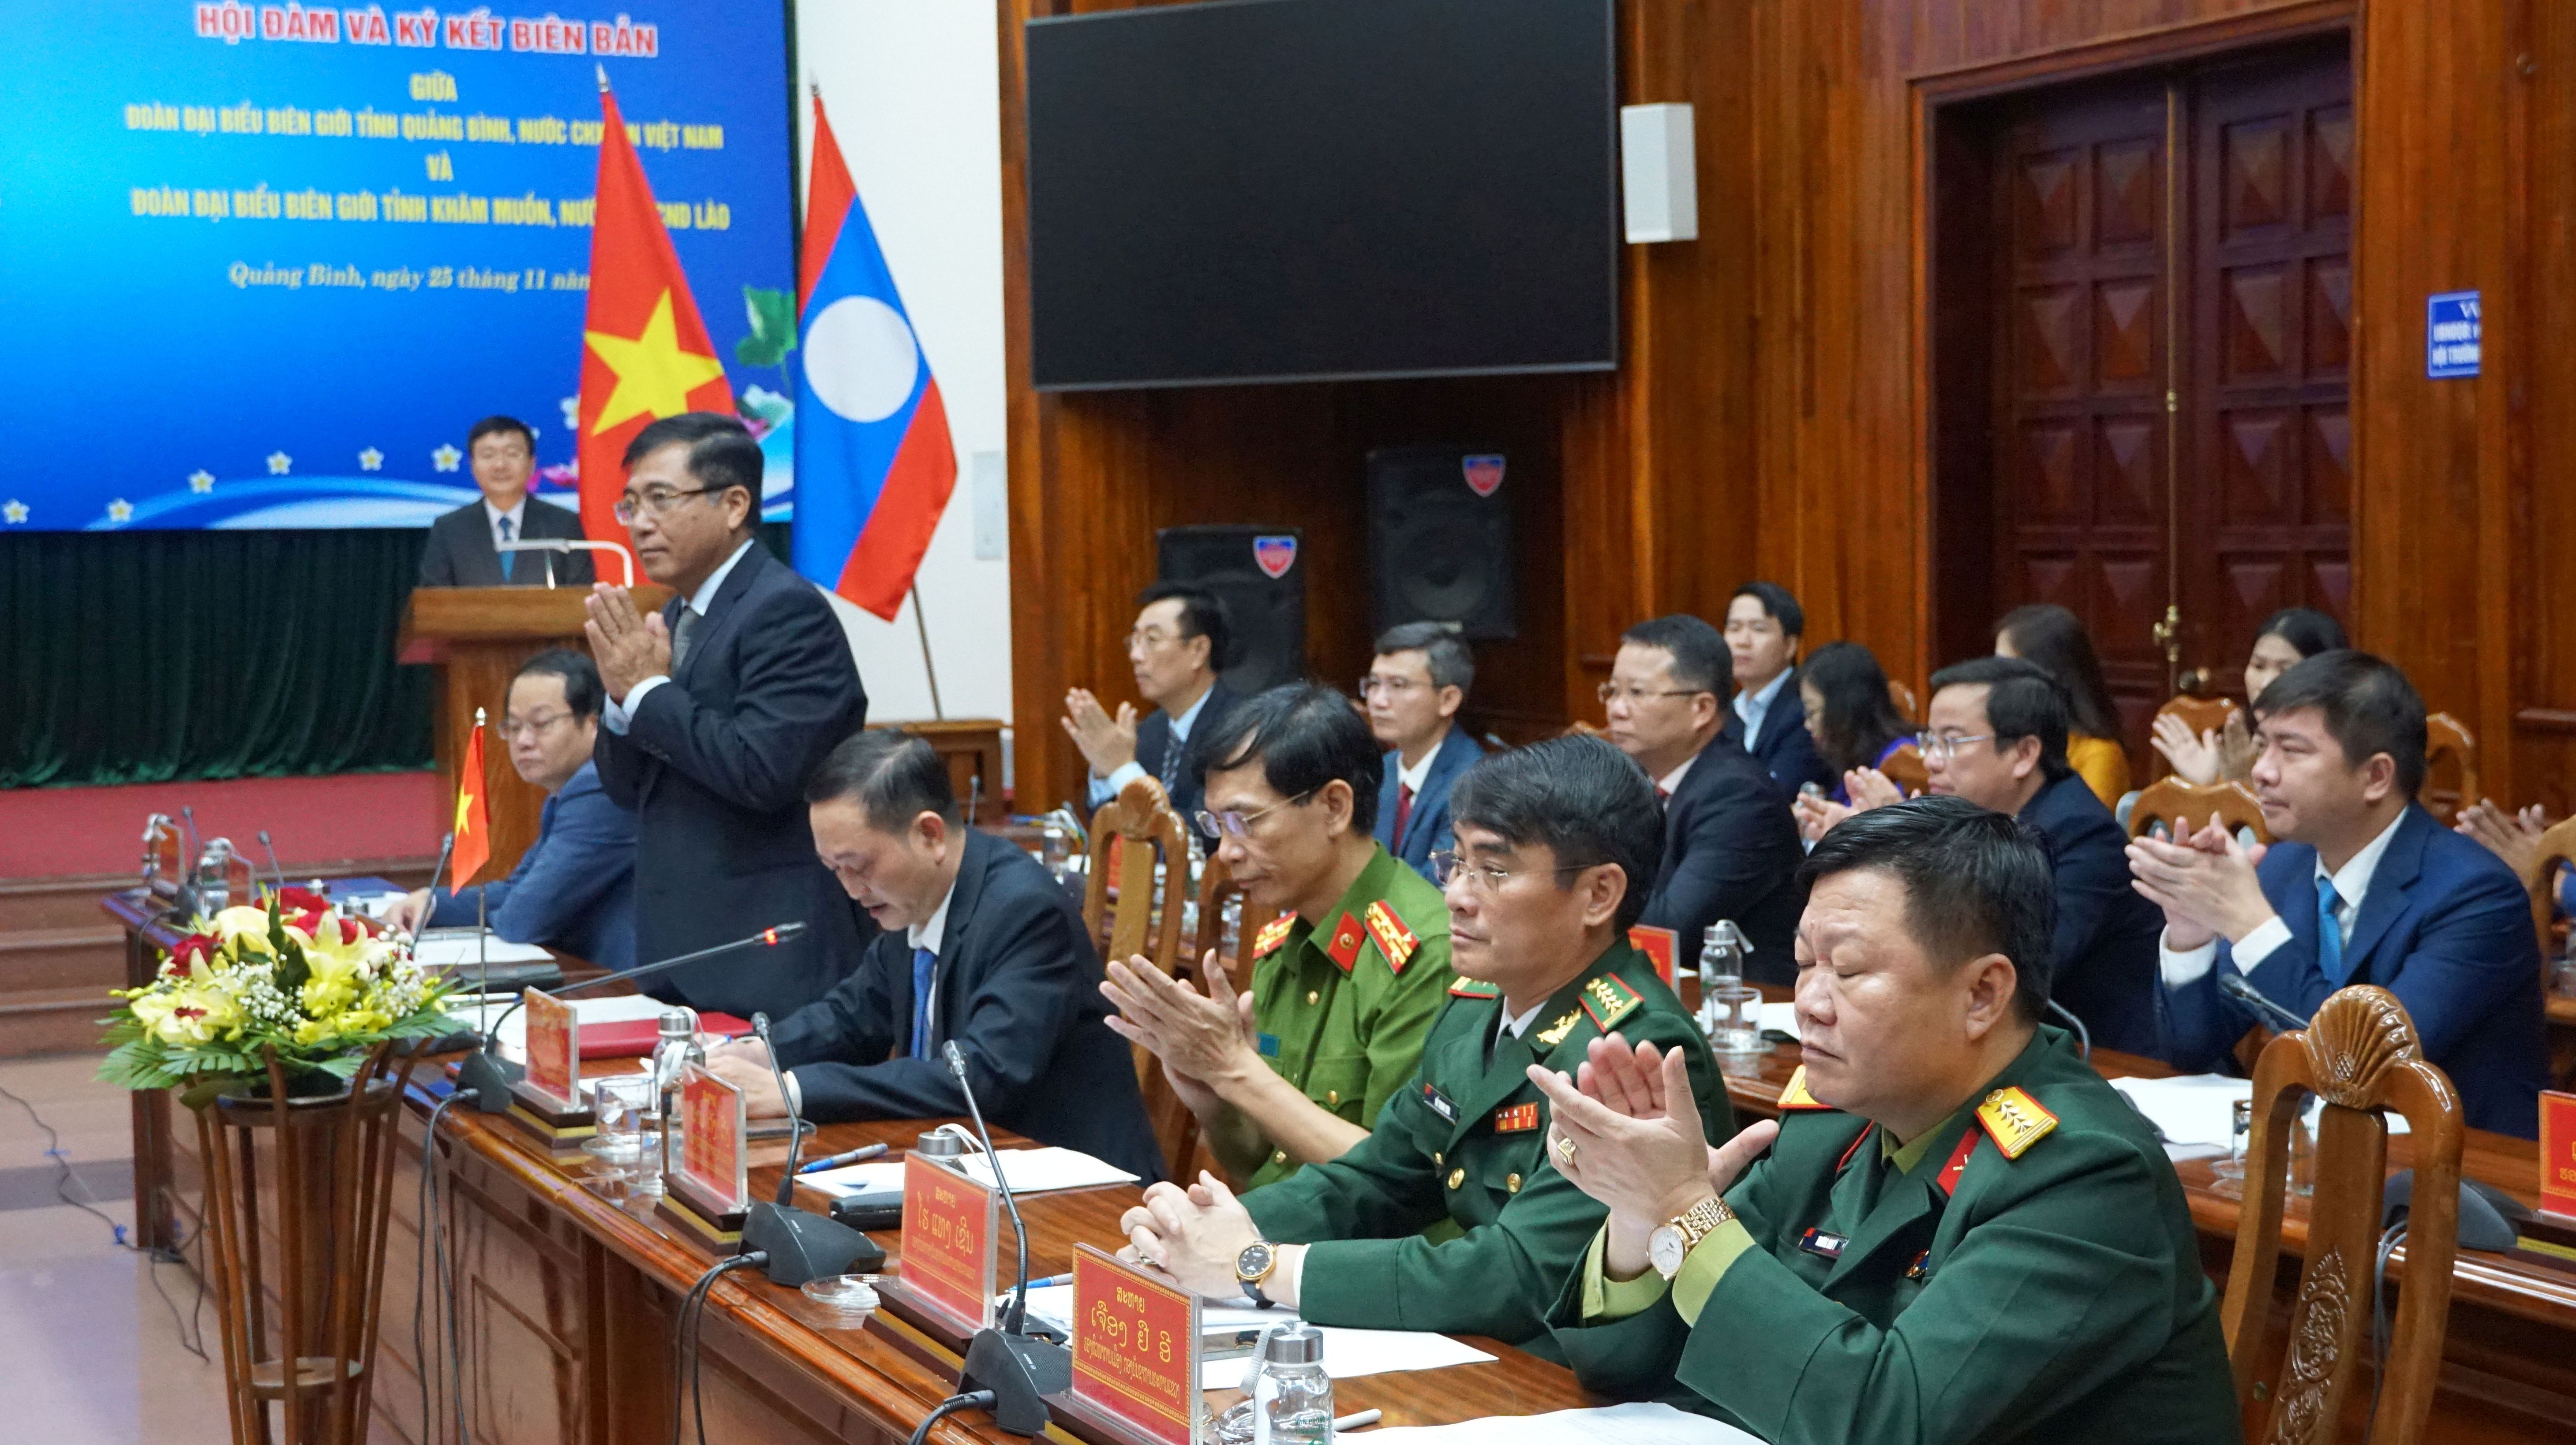 Đoàn đại biểu biên giới tỉnh Quảng Bình (nước CHXHCN Việt Nam) tham gia buổi hội đàm.